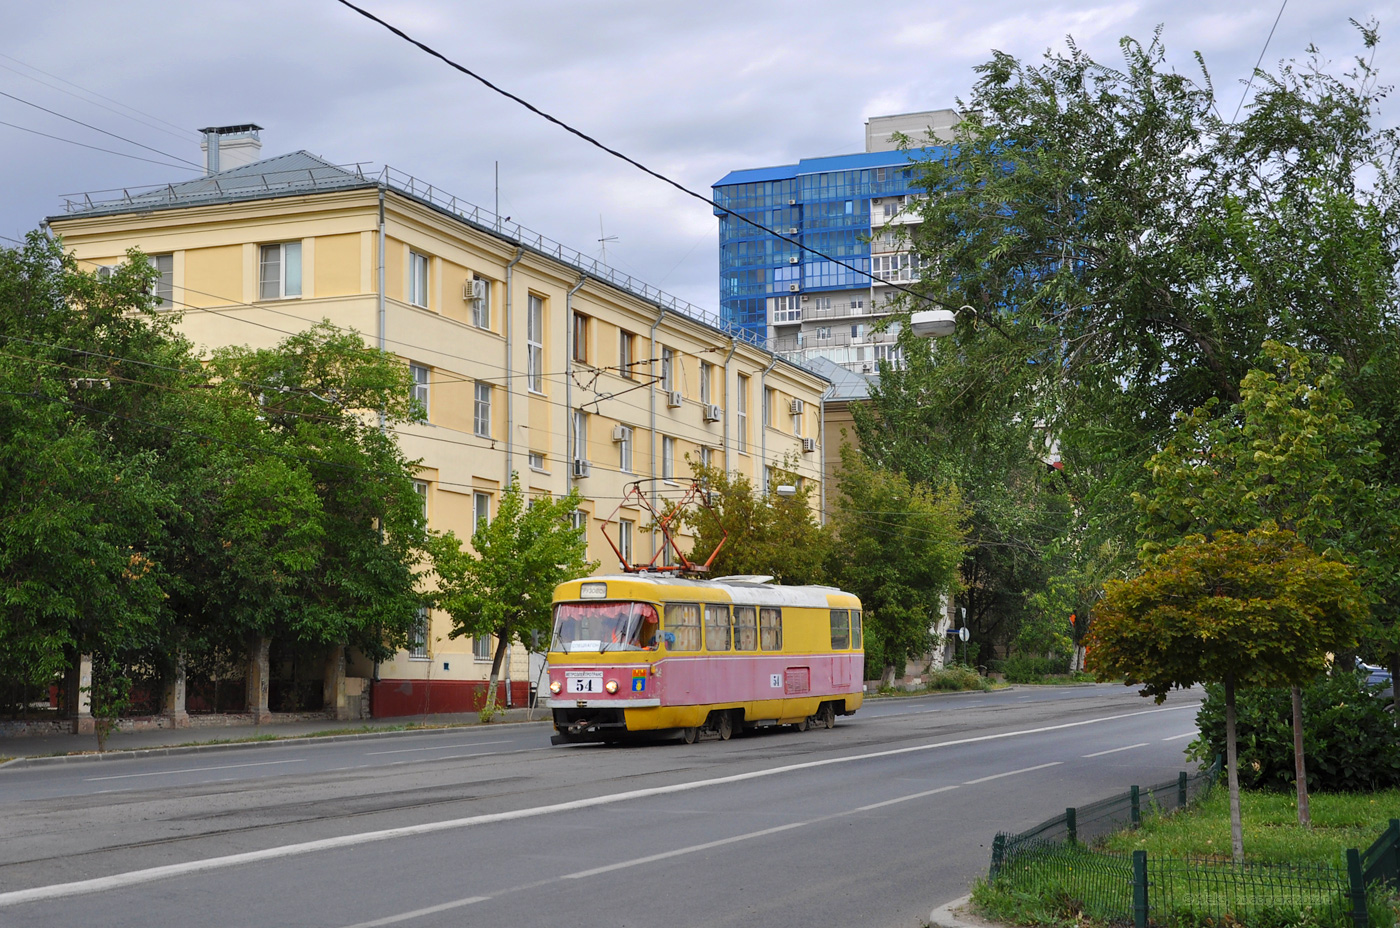 Volgograd, Tatra T3SU (2-door) Nr 54